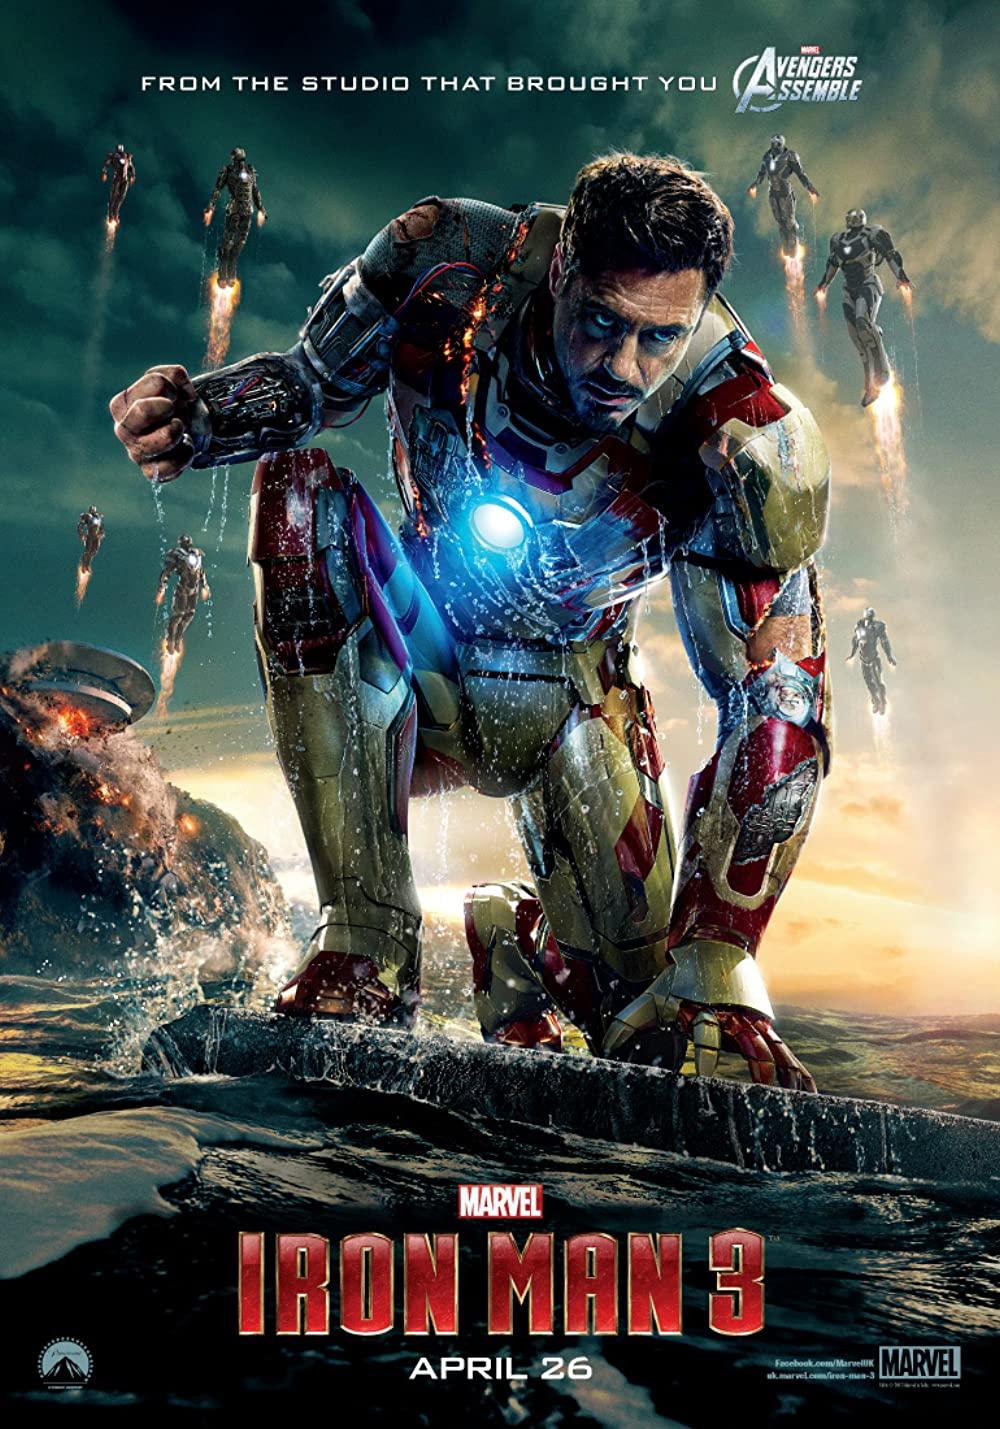 بوستر فيلم Iron man 3 الجزء الاخير من السلسلة حسب ترتيب أفلام مارفل